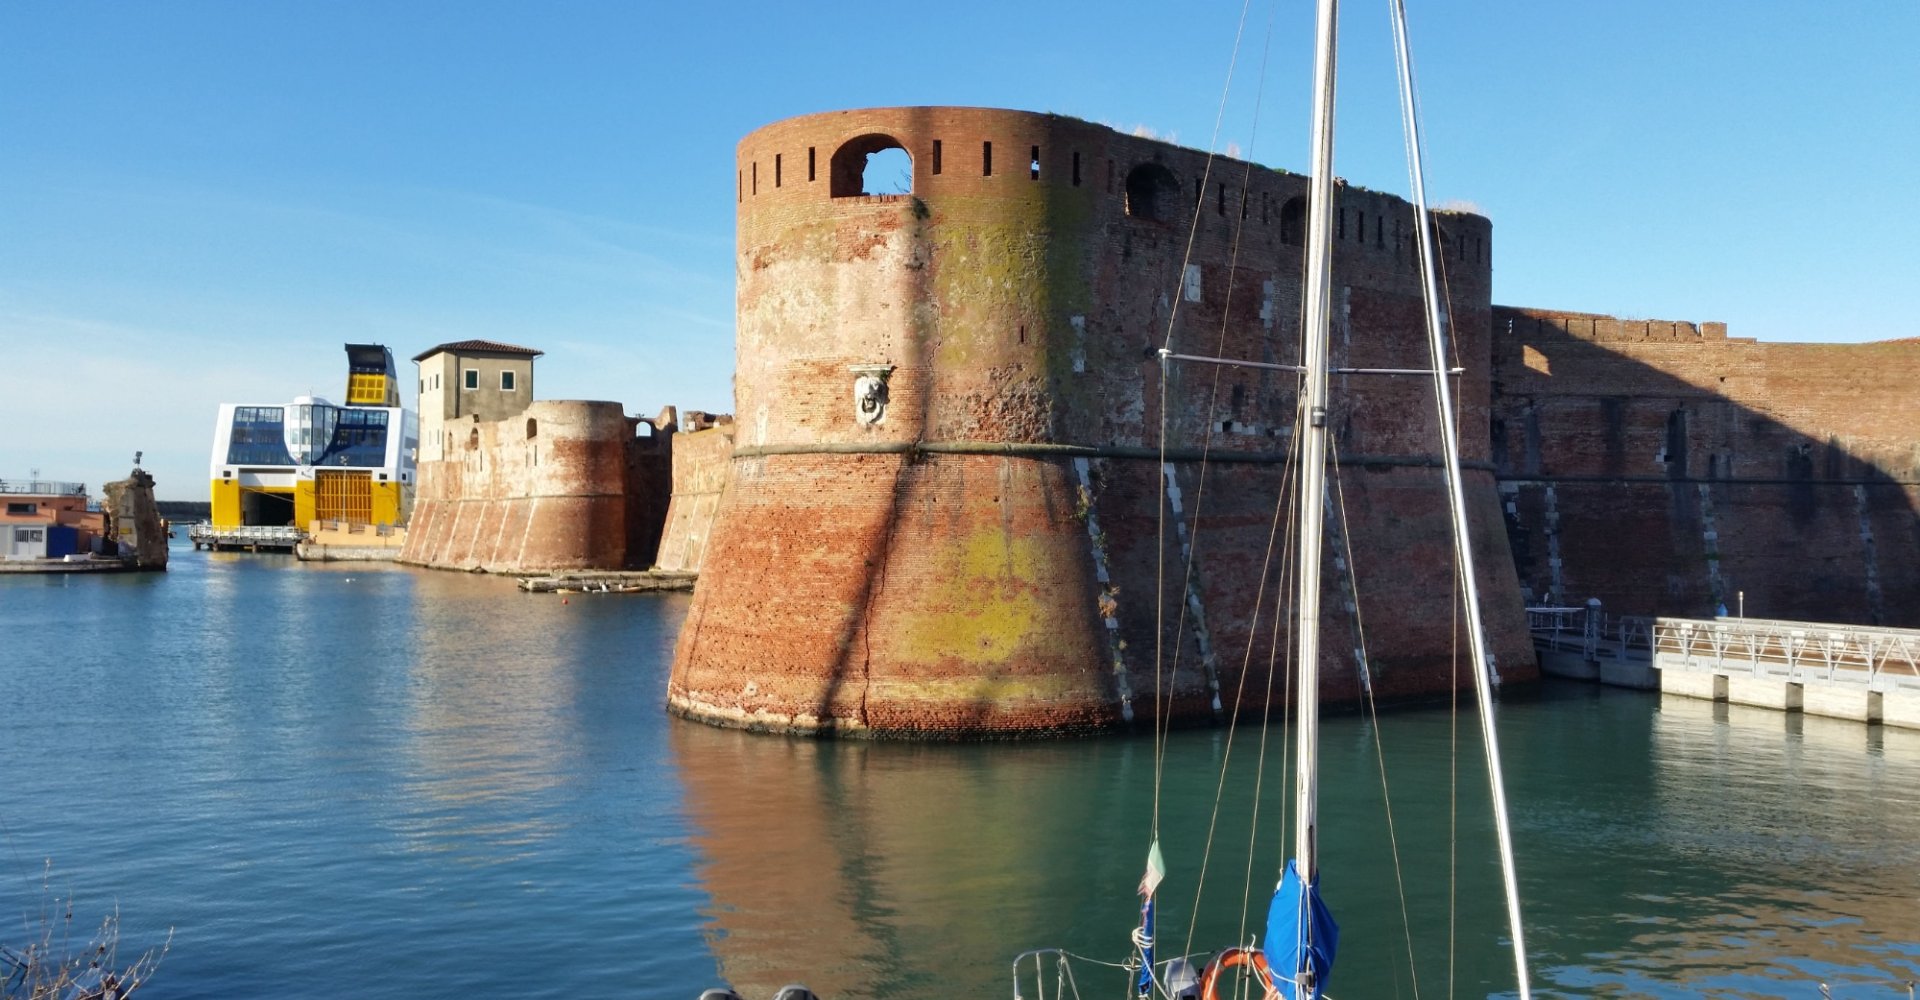 mastio di antica fortezza sul mare